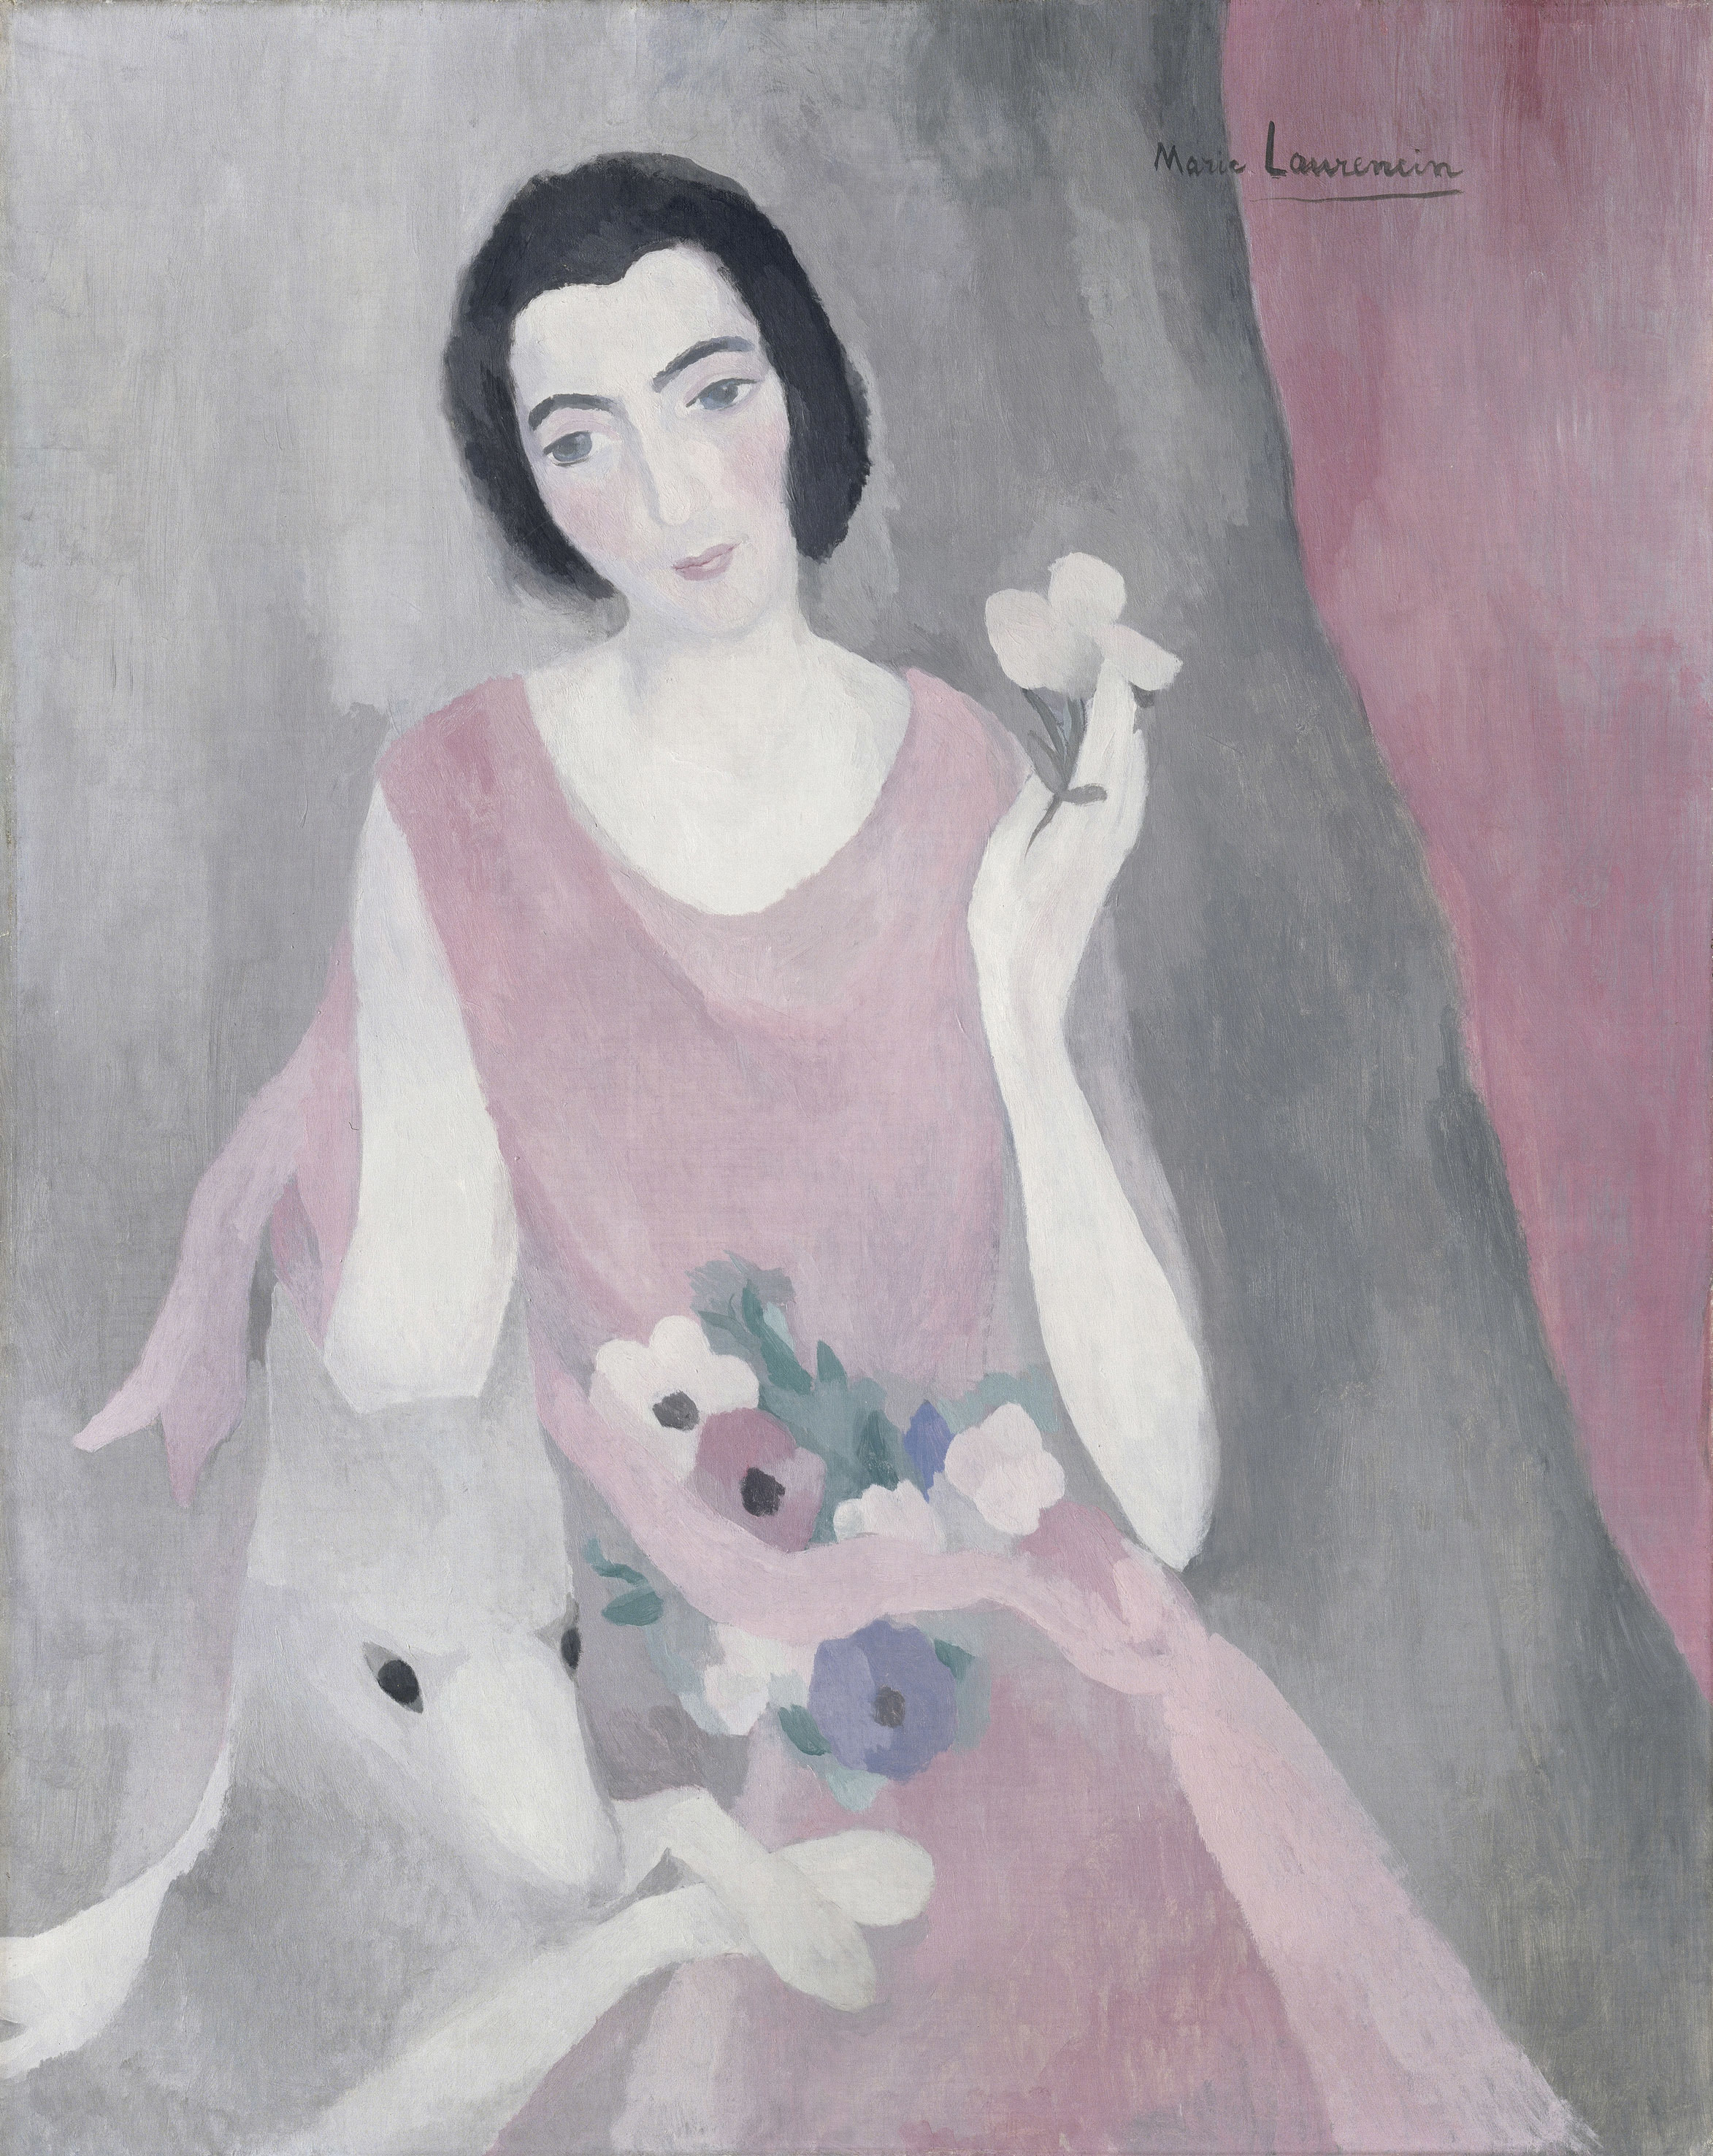 マリー・ローランサン《ポール・ギョーム夫人の肖像》1924年頃、油彩・カンヴァス、92×73cm、オランジュリー美術館